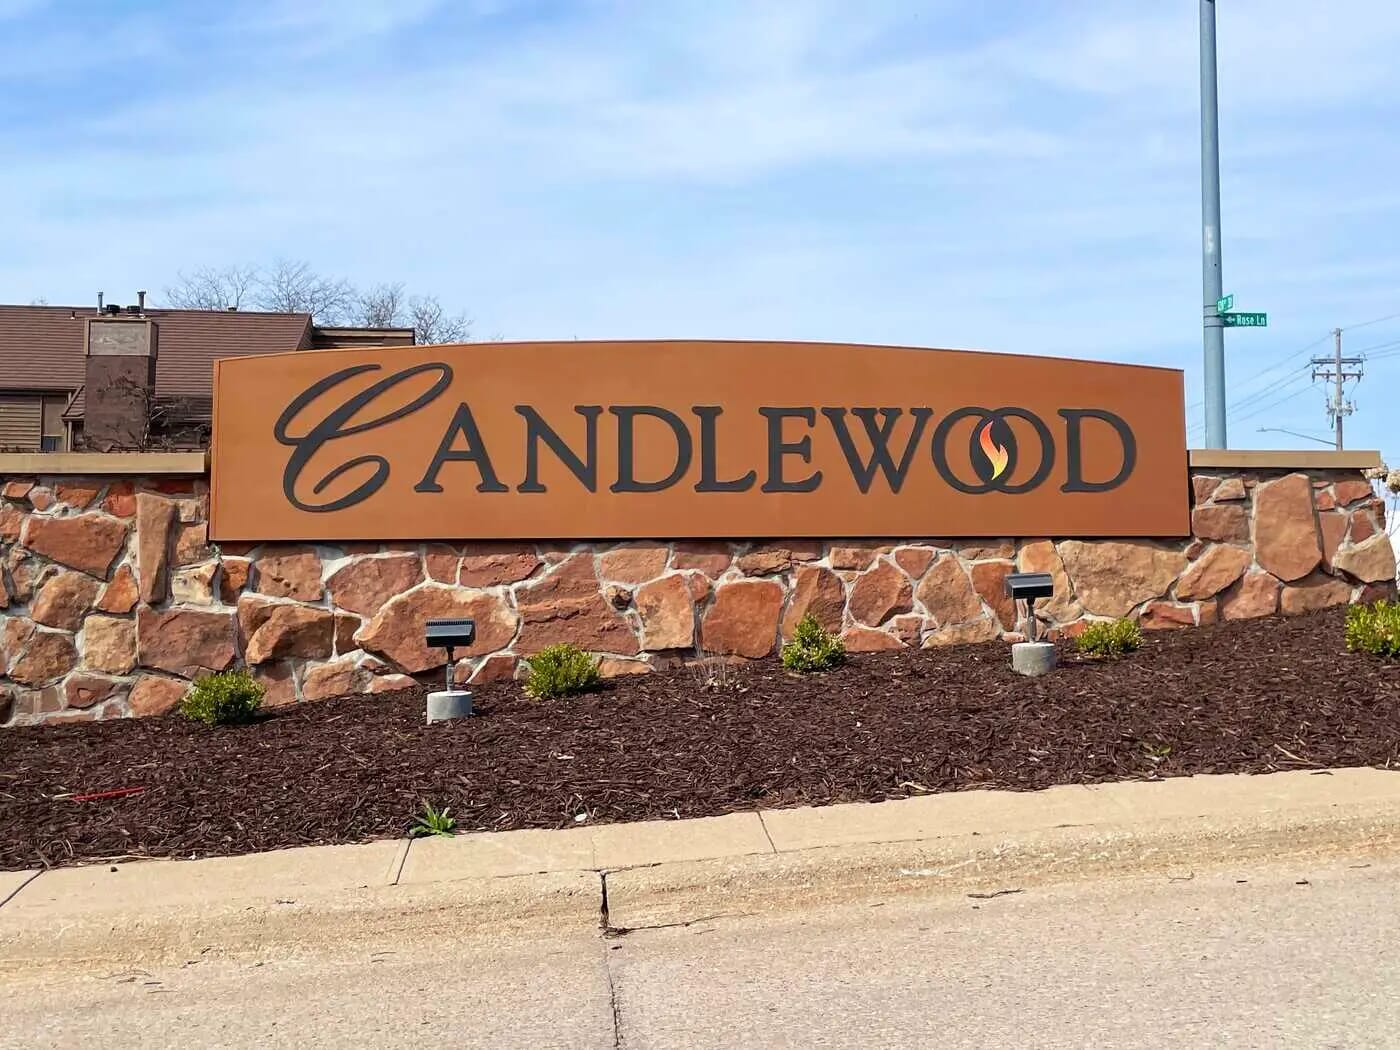 Candlewood Neighborhood - Omaha, Nebraska